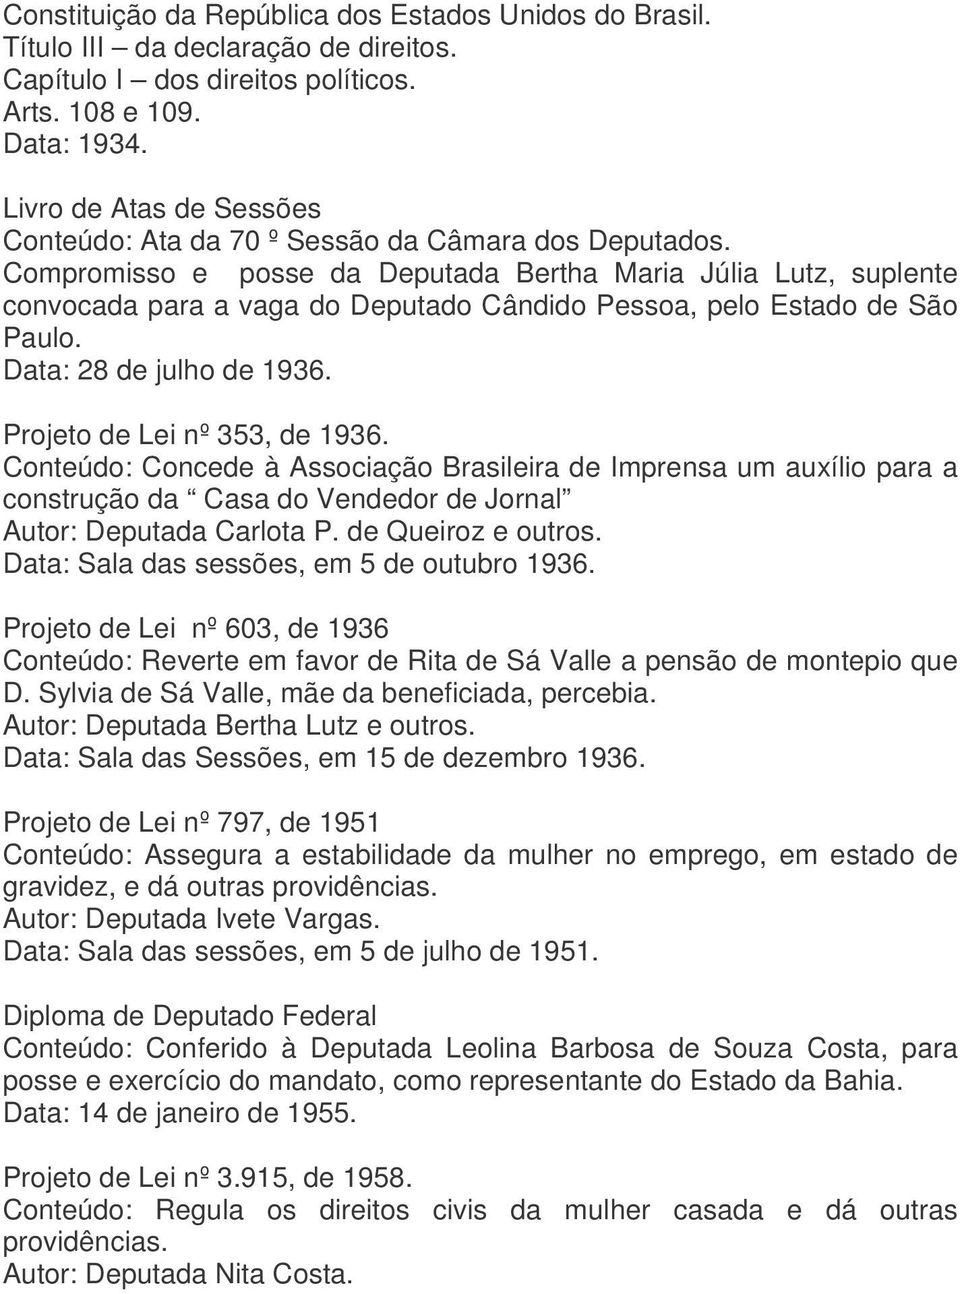 Compromisso e posse da Deputada Bertha Maria Júlia Lutz, suplente convocada para a vaga do Deputado Cândido Pessoa, pelo Estado de São Paulo. Data: 28 de julho de 1936. Projeto de Lei nº 353, de 1936.